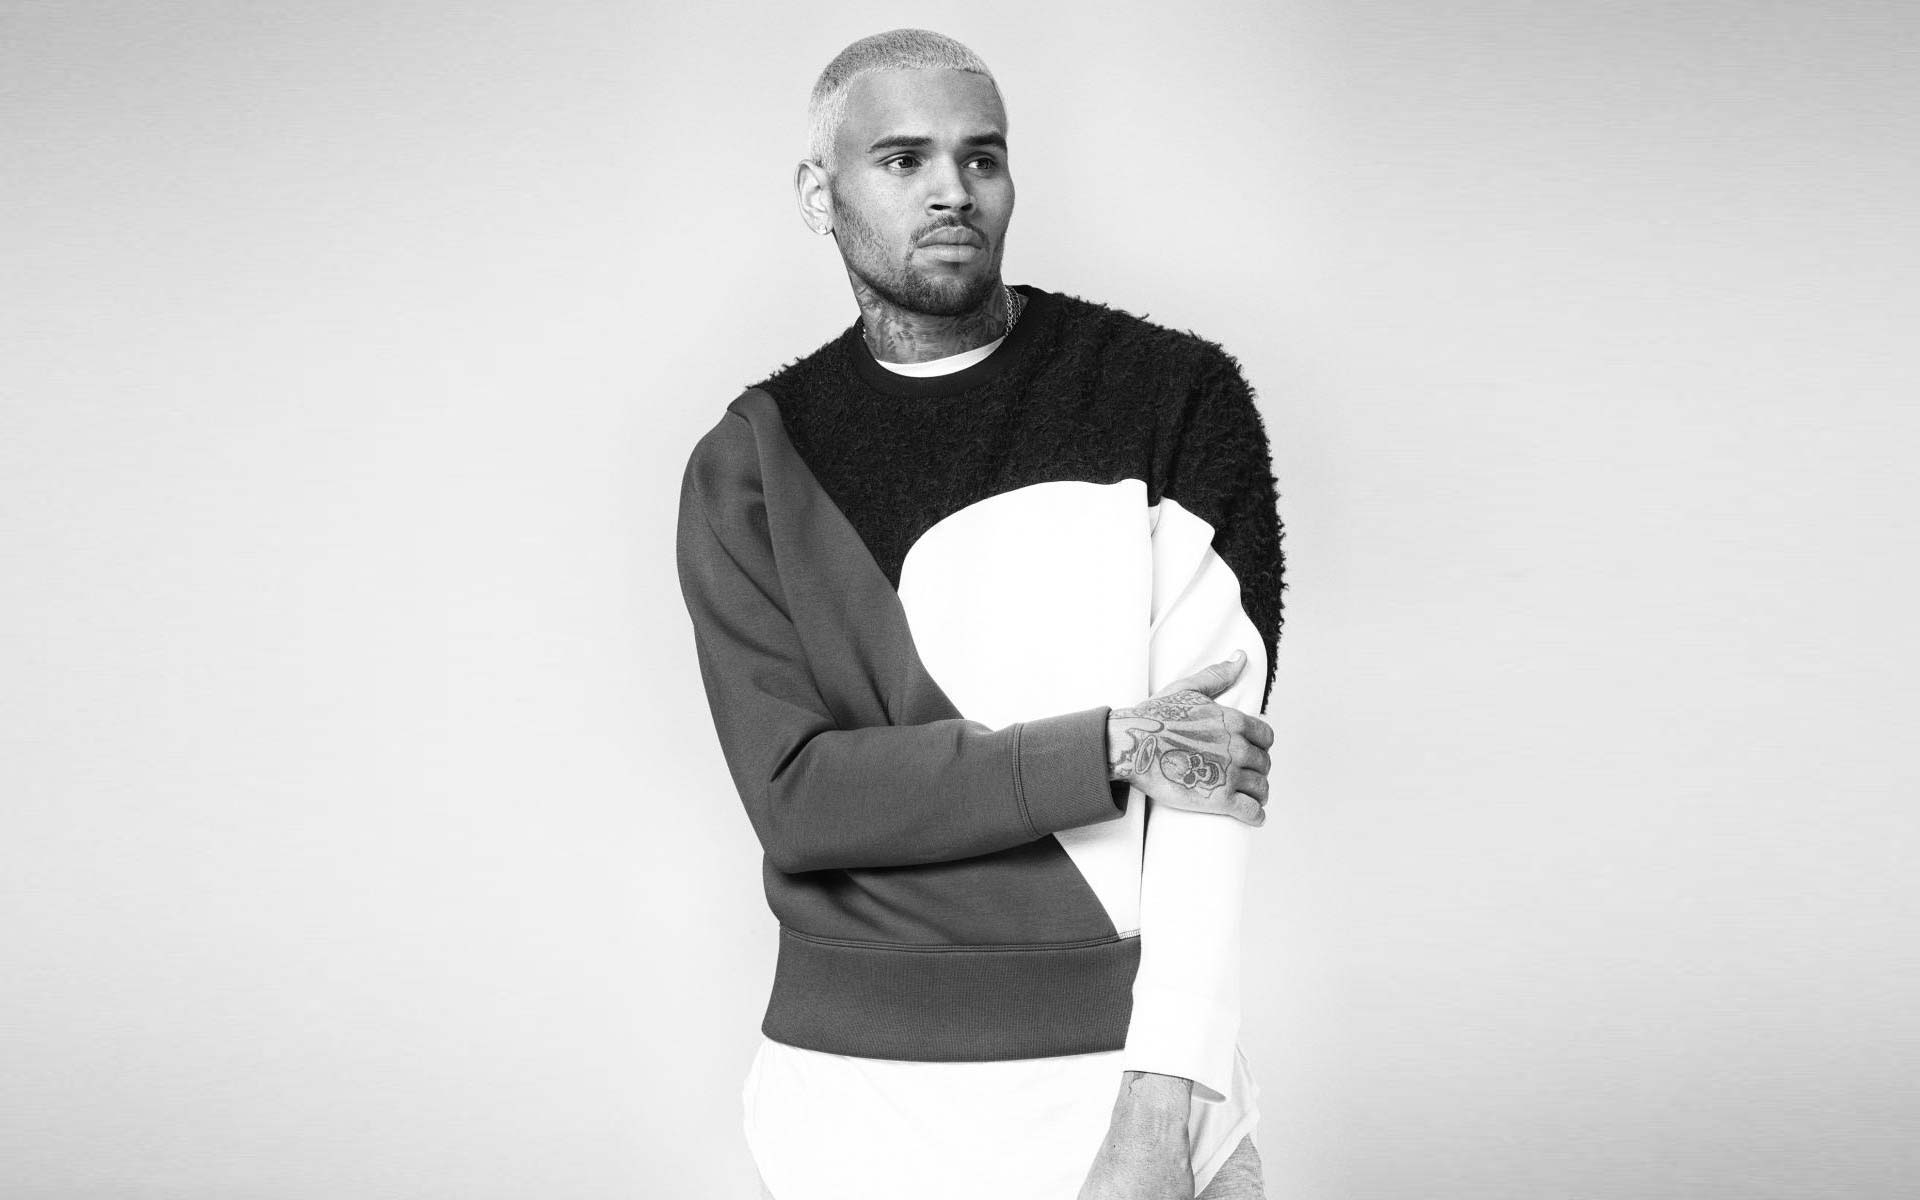 Chris Brown Image Free